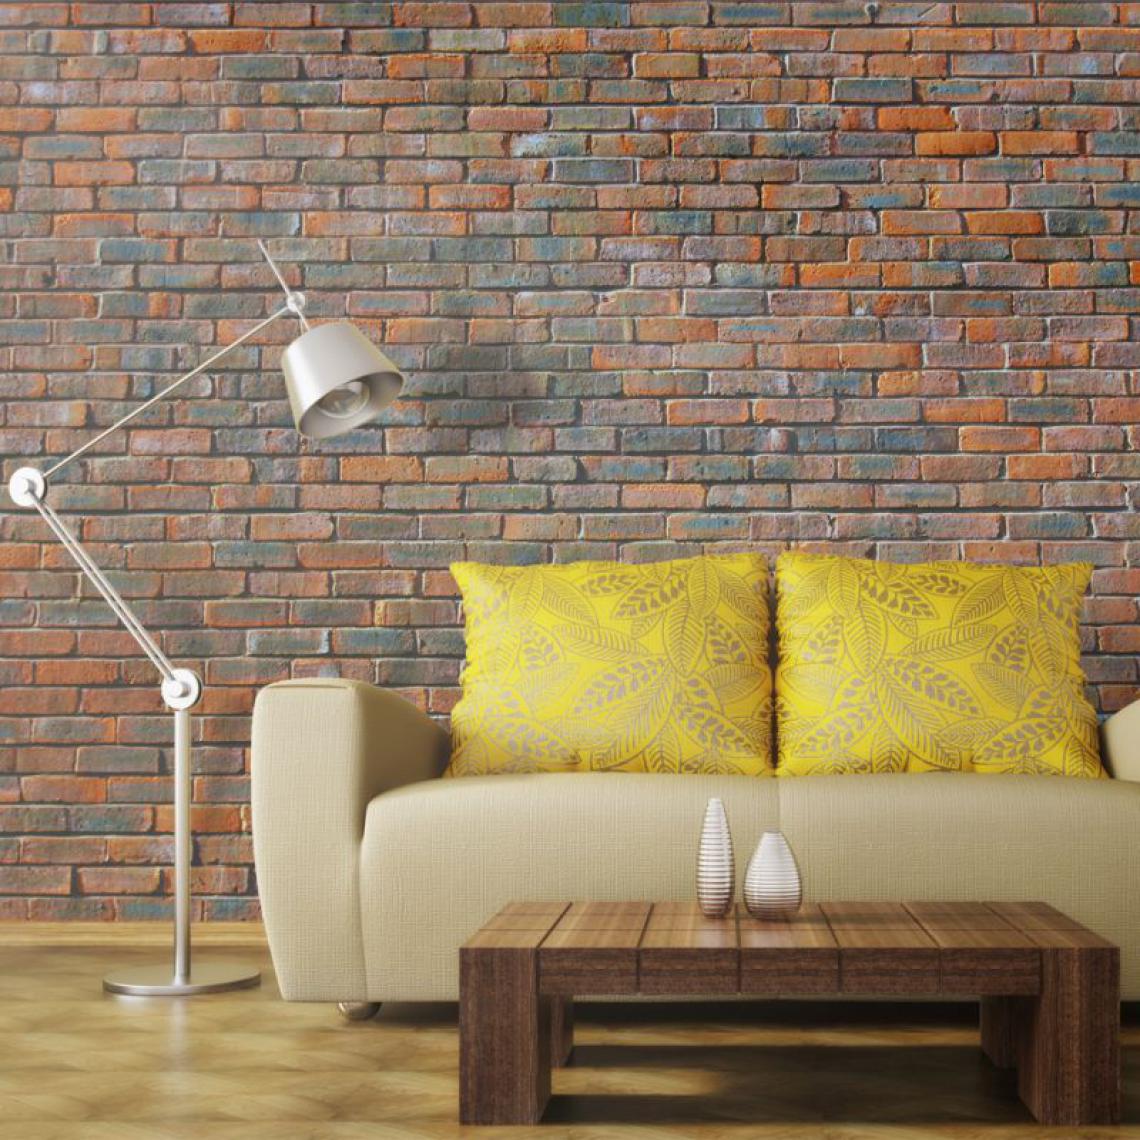 Artgeist - Papier peint - Mur en briques .Taille : 200x154 - Papier peint